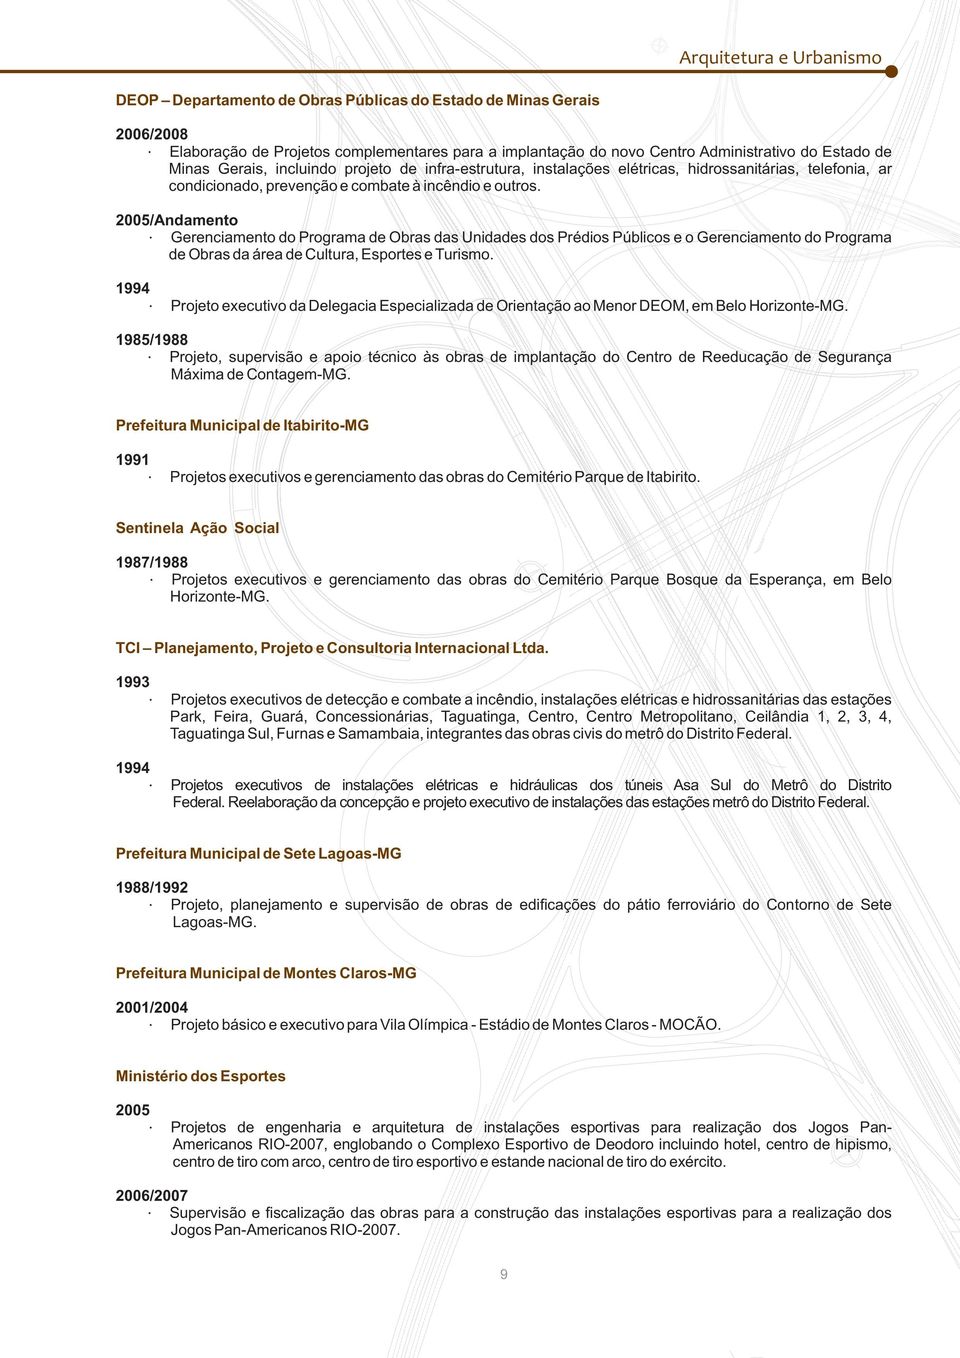 2005/Andamento Gerenciamento do Programa de Obras das Unidades dos Prédios Públicos e o Gerenciamento do Programa de Obras da área de Cultura, Esportes e Turismo.